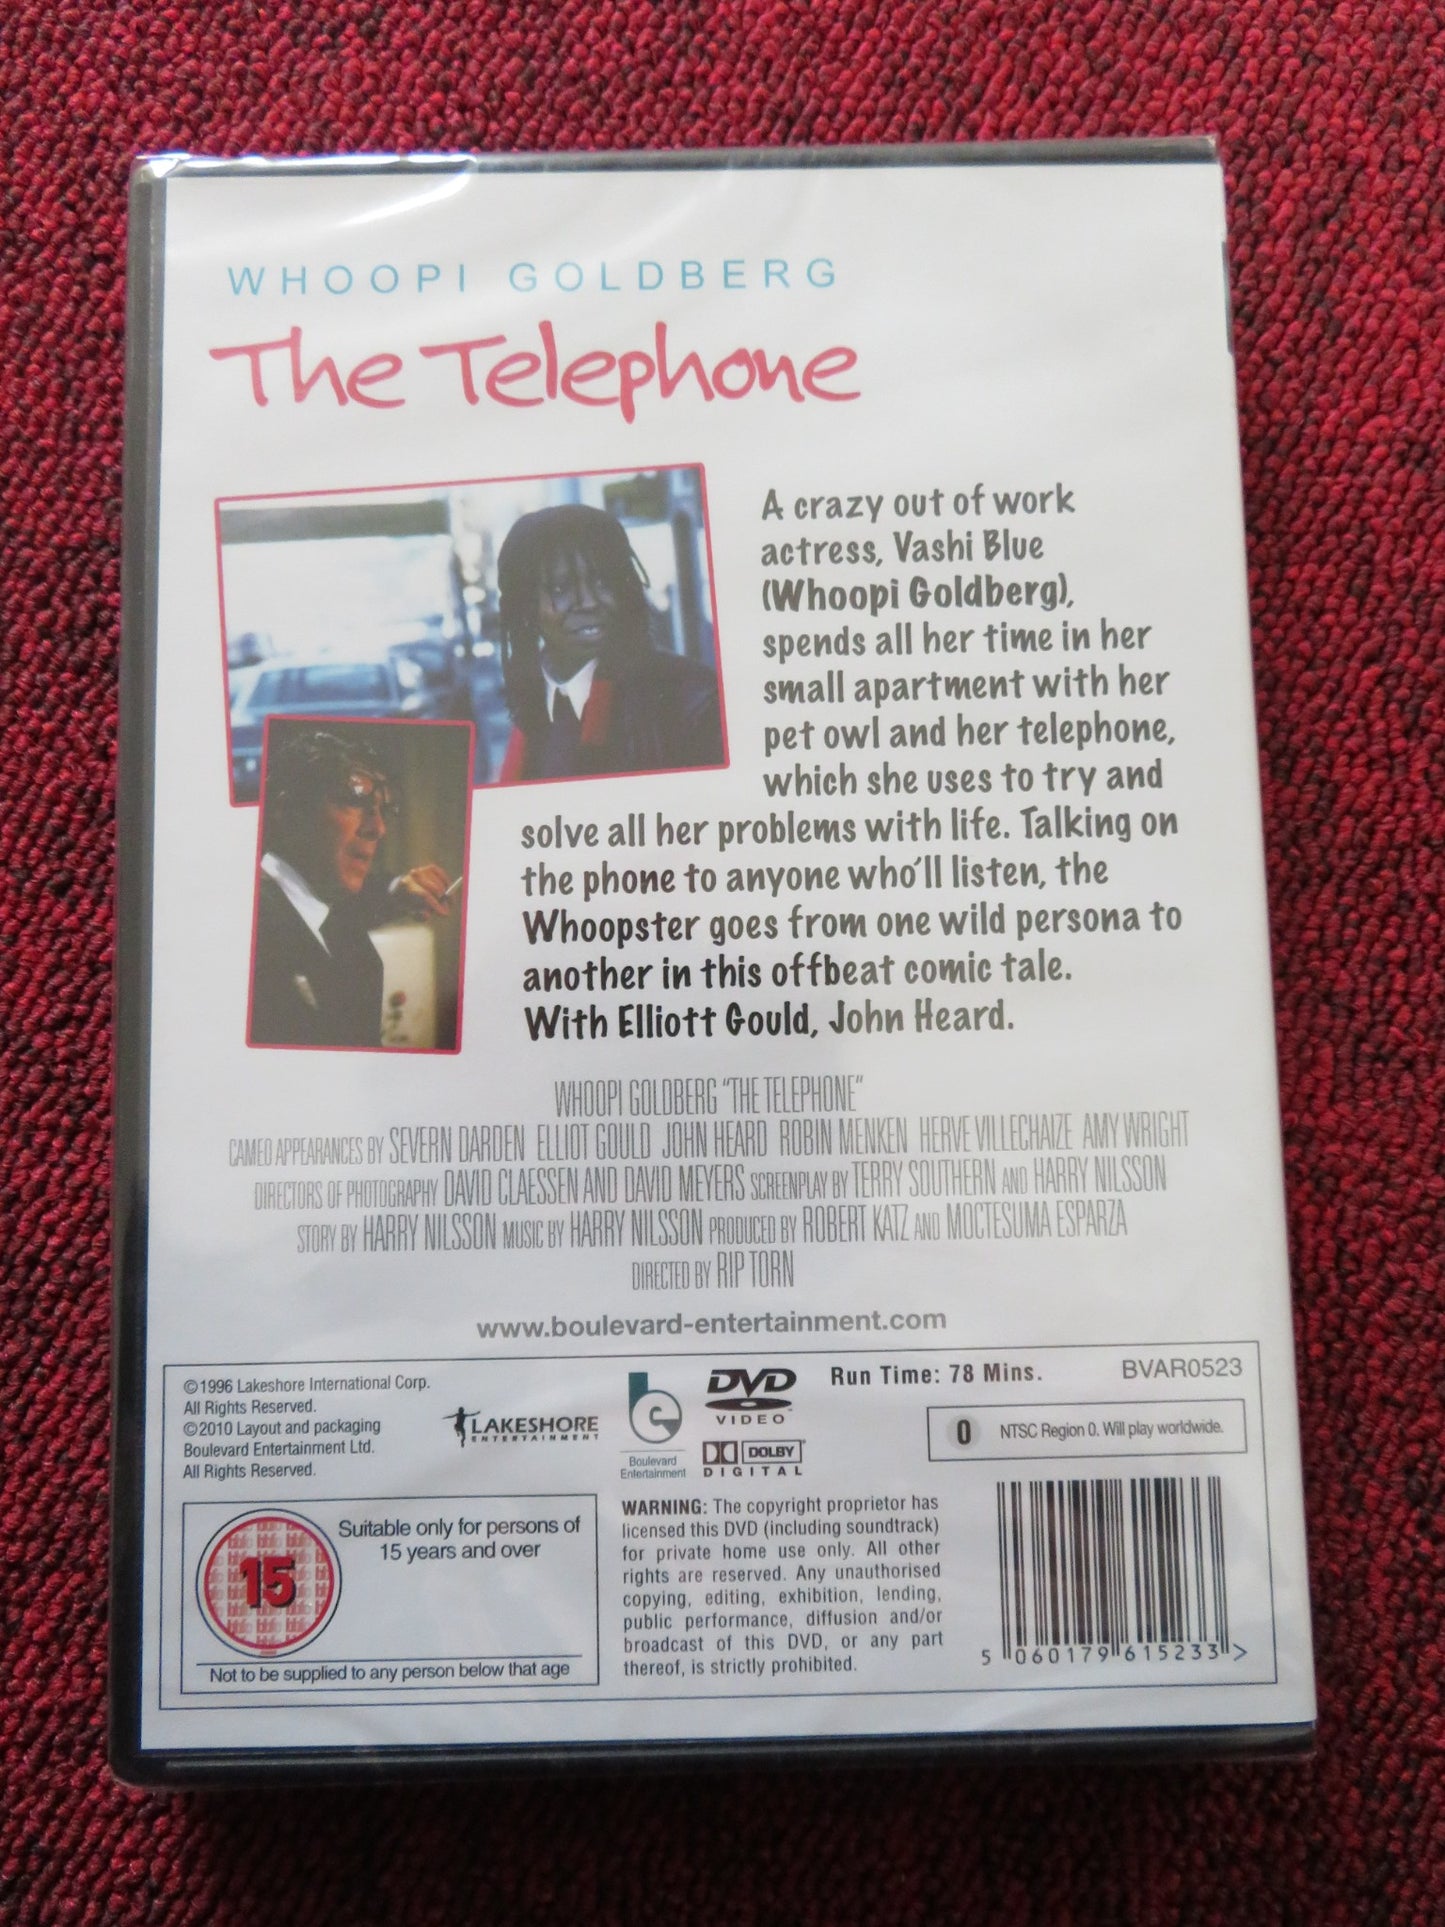 THE TELEPHONE (DVD) WHOOPI GOLDERG 1988 REGION 0